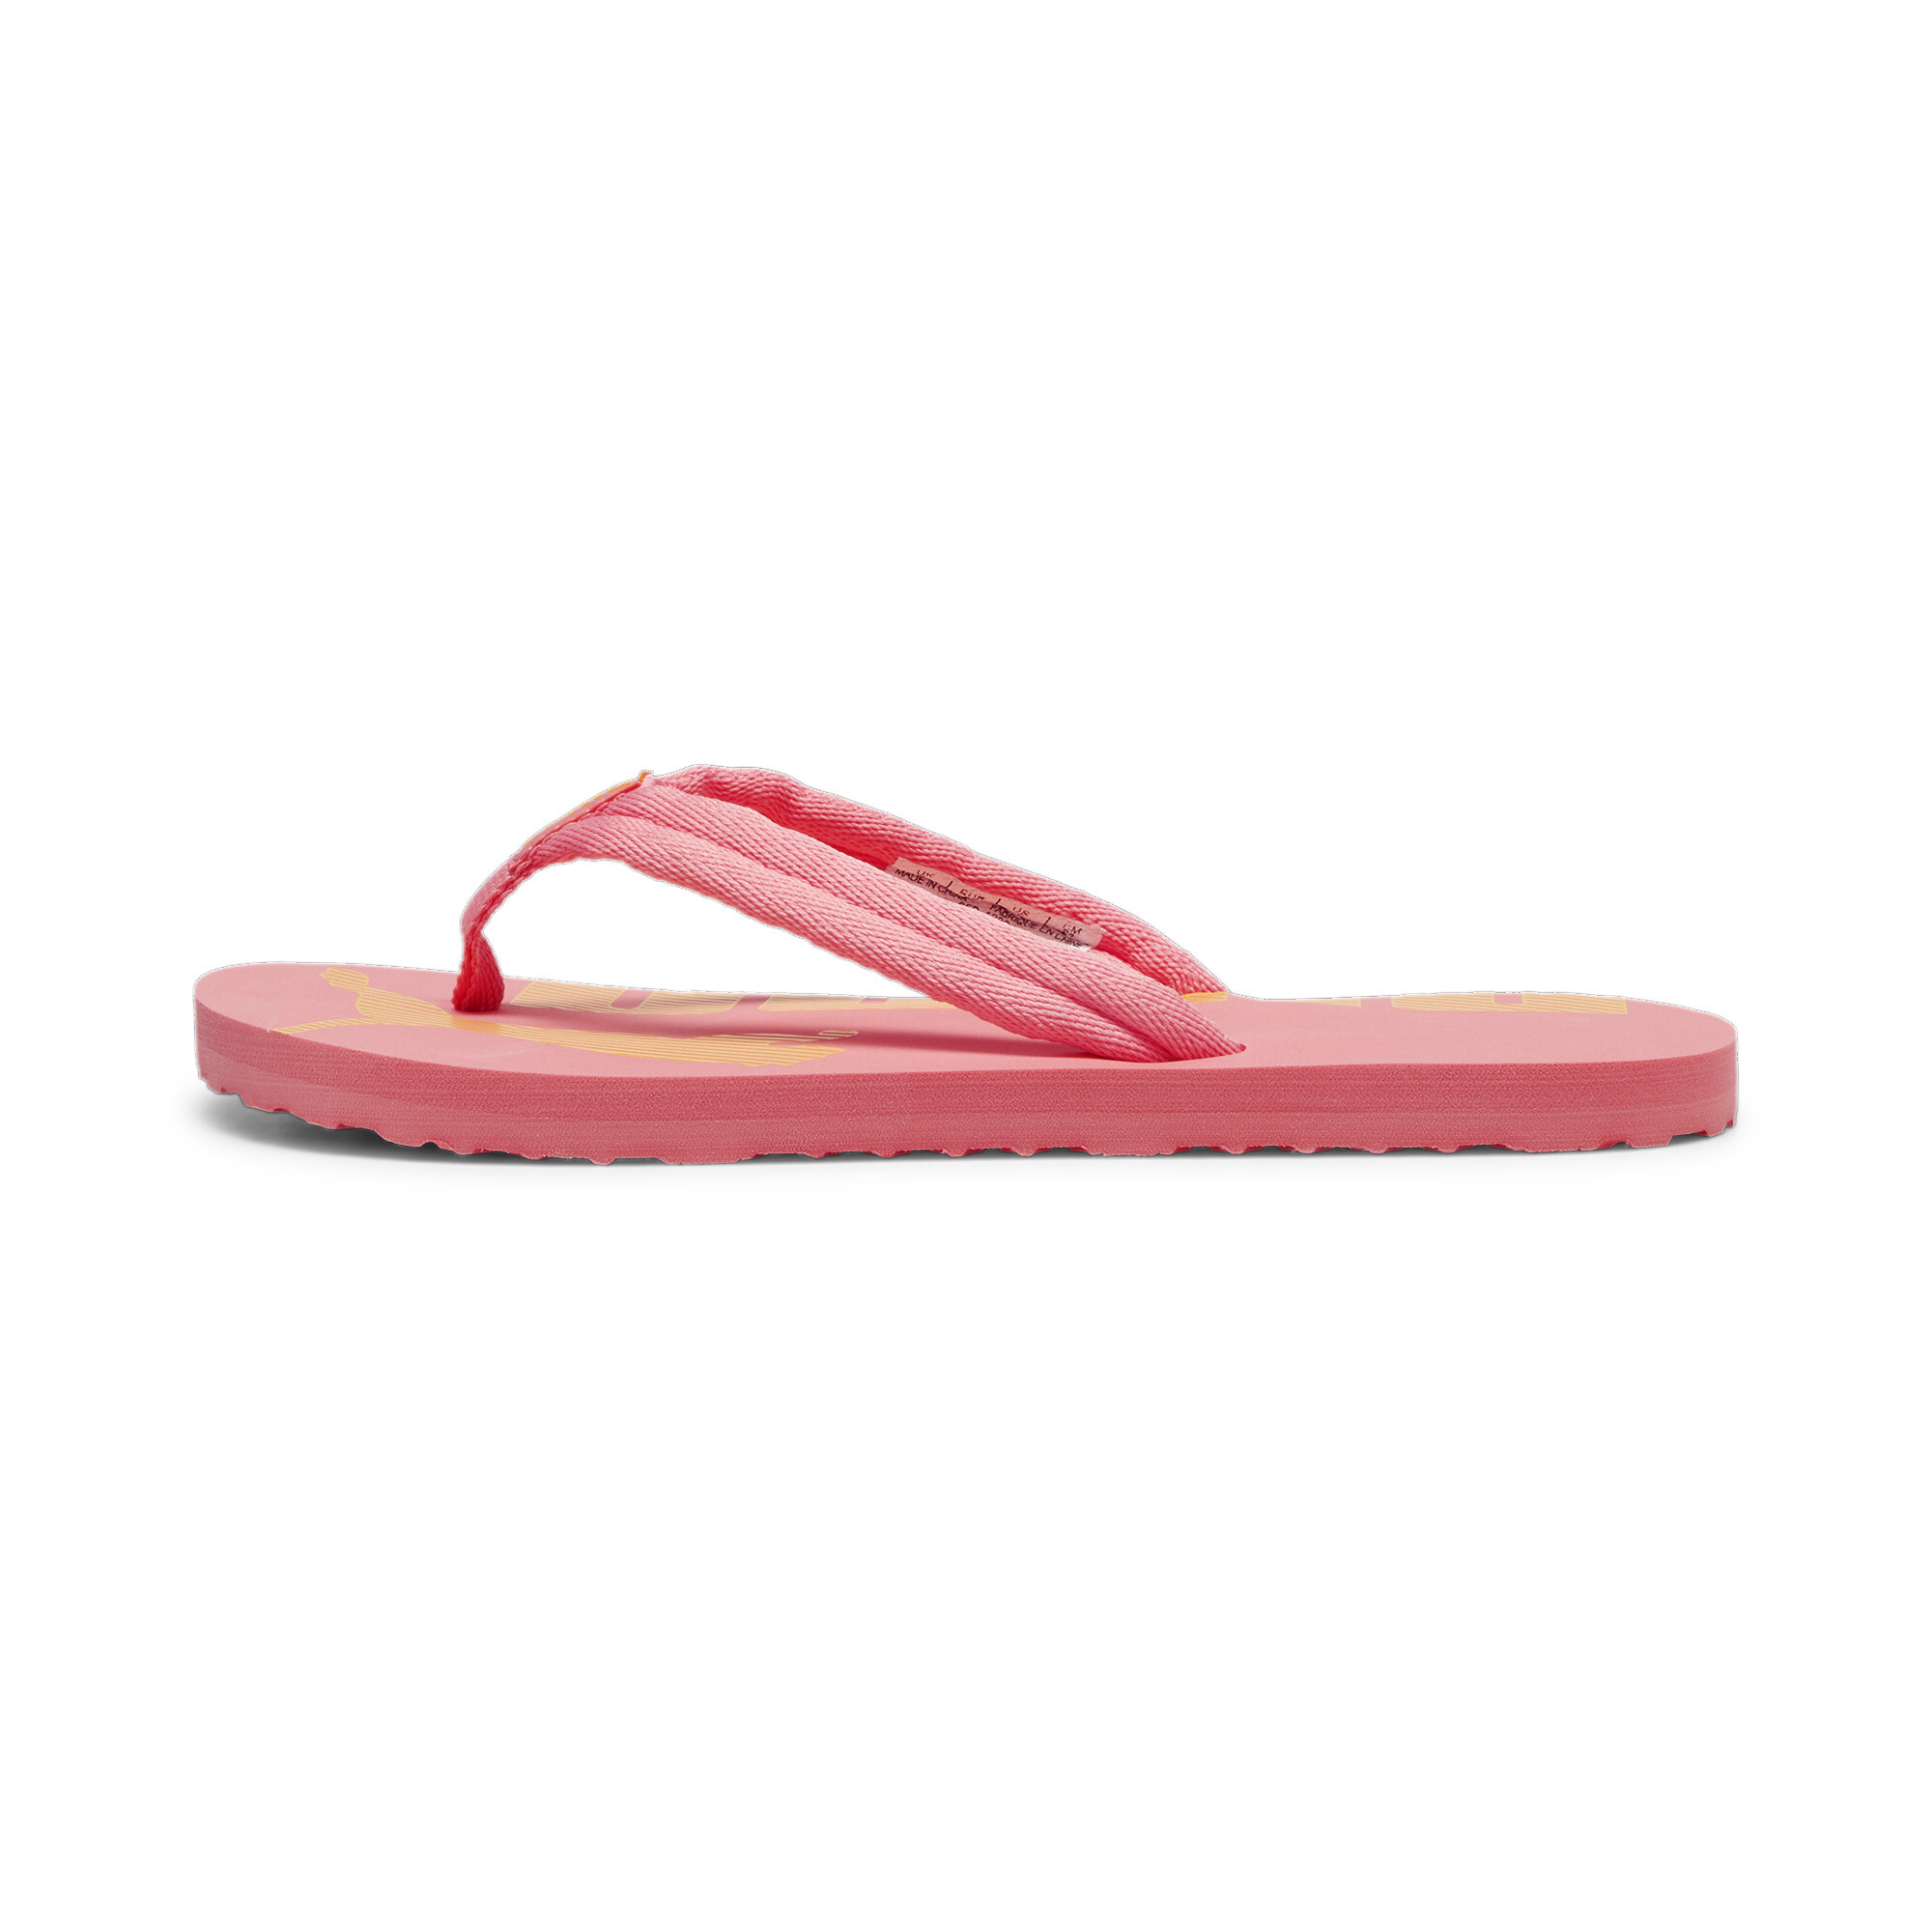 Men's PUMA Epic Flip V2 Sandals In Pink, Size EU 44.5